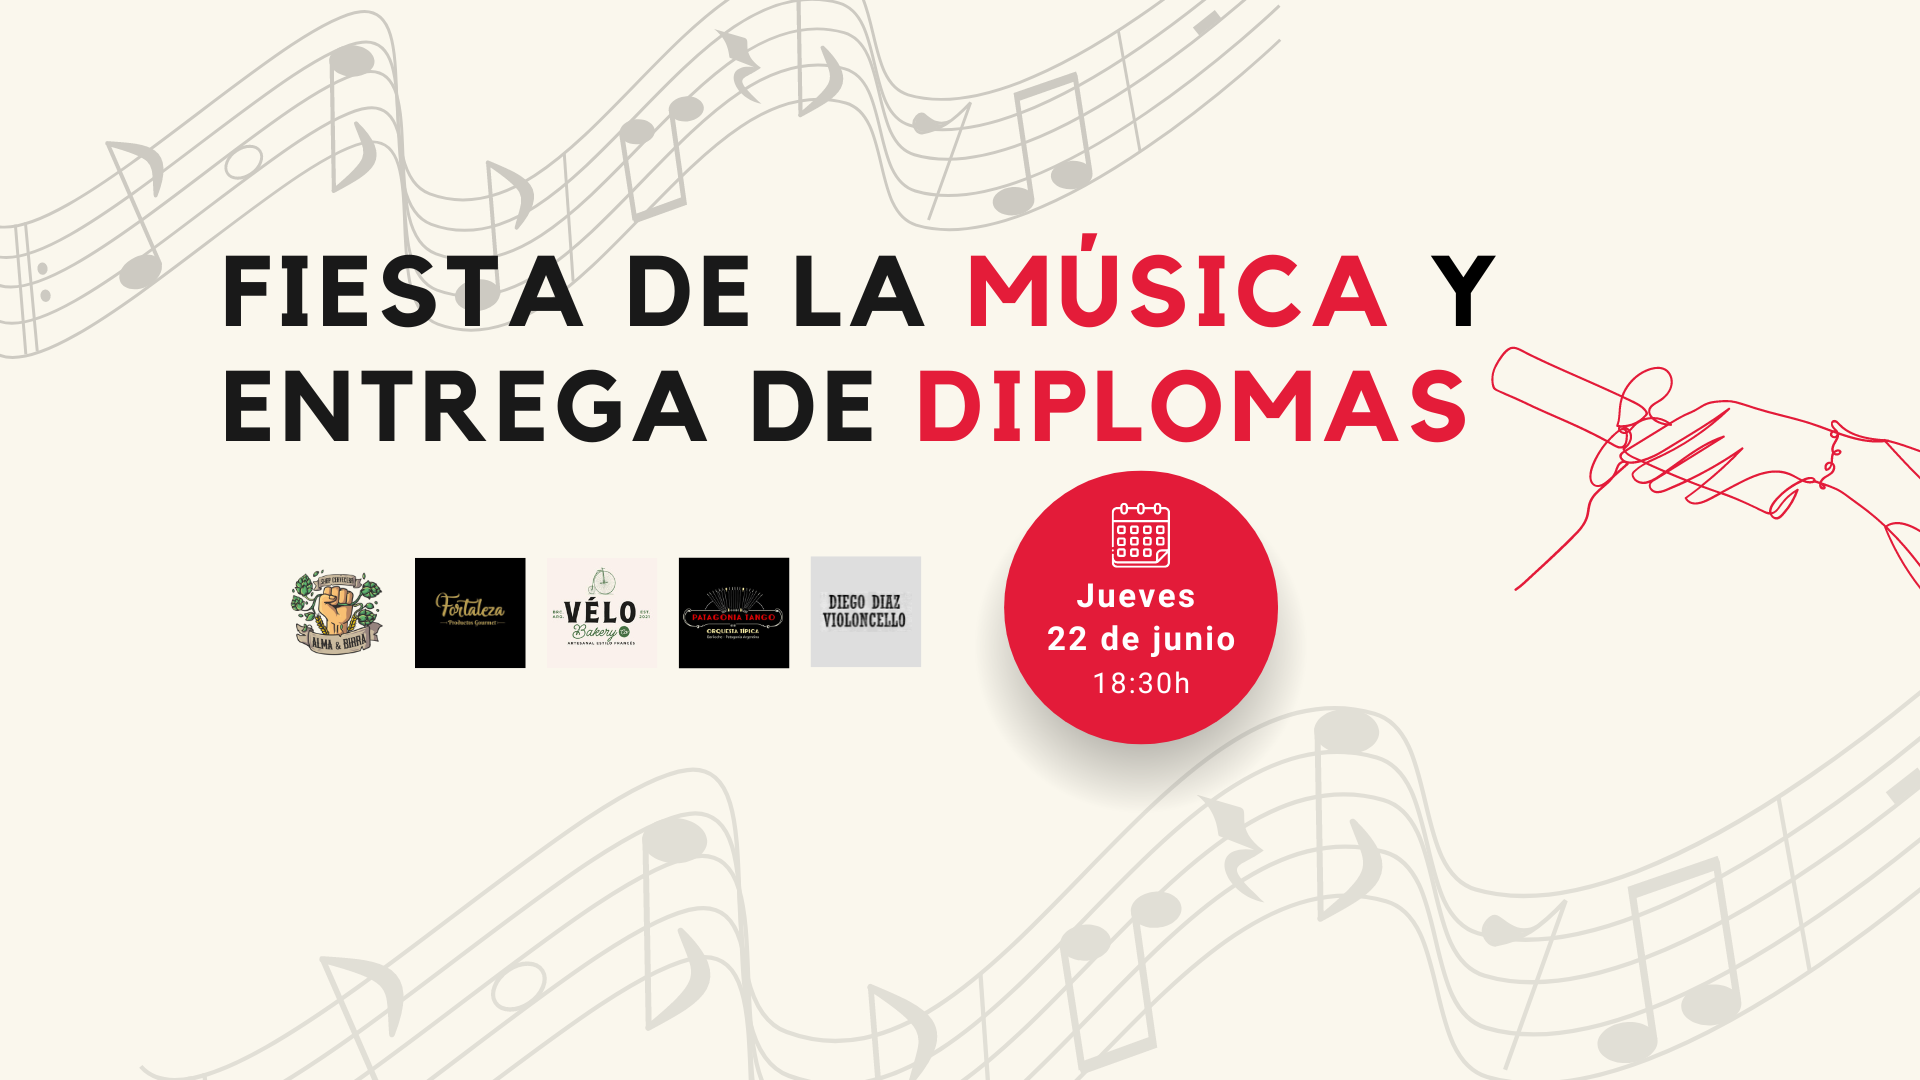 Fiesta de la Música & Entrega de diplomas